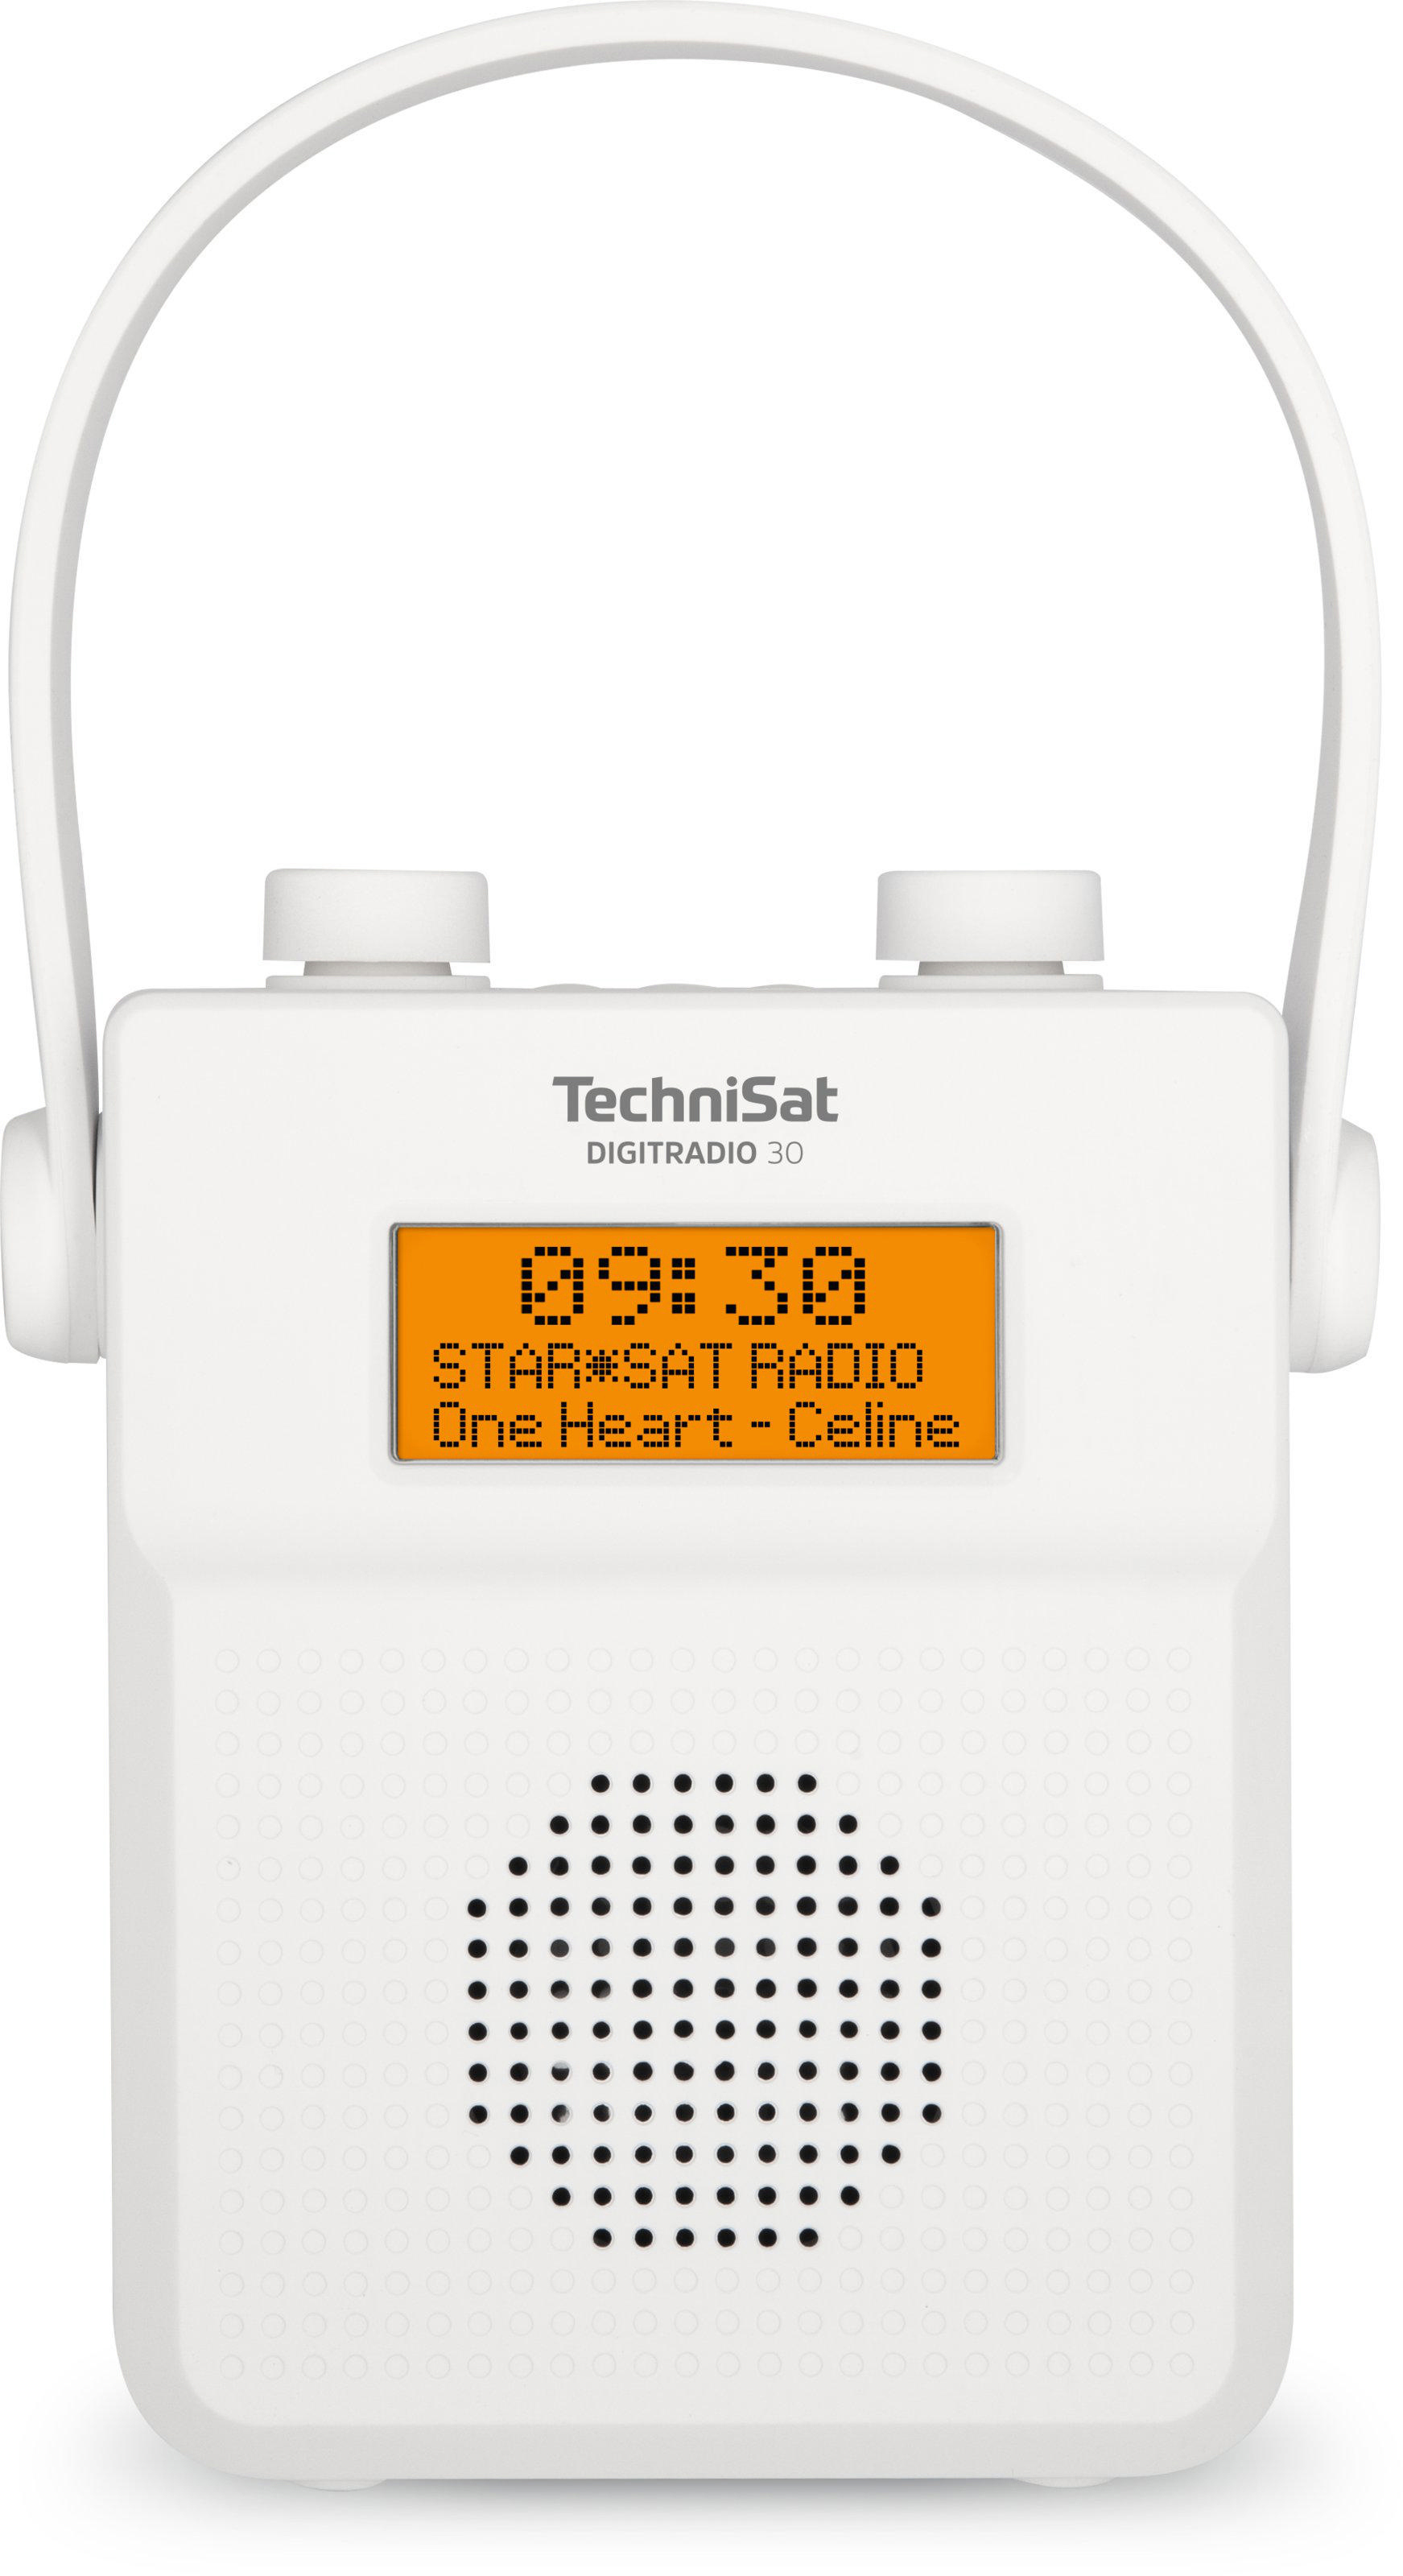 30 Duschradio, TECHNISAT Portables DIGITRADIO FM, DAB+, Weiß